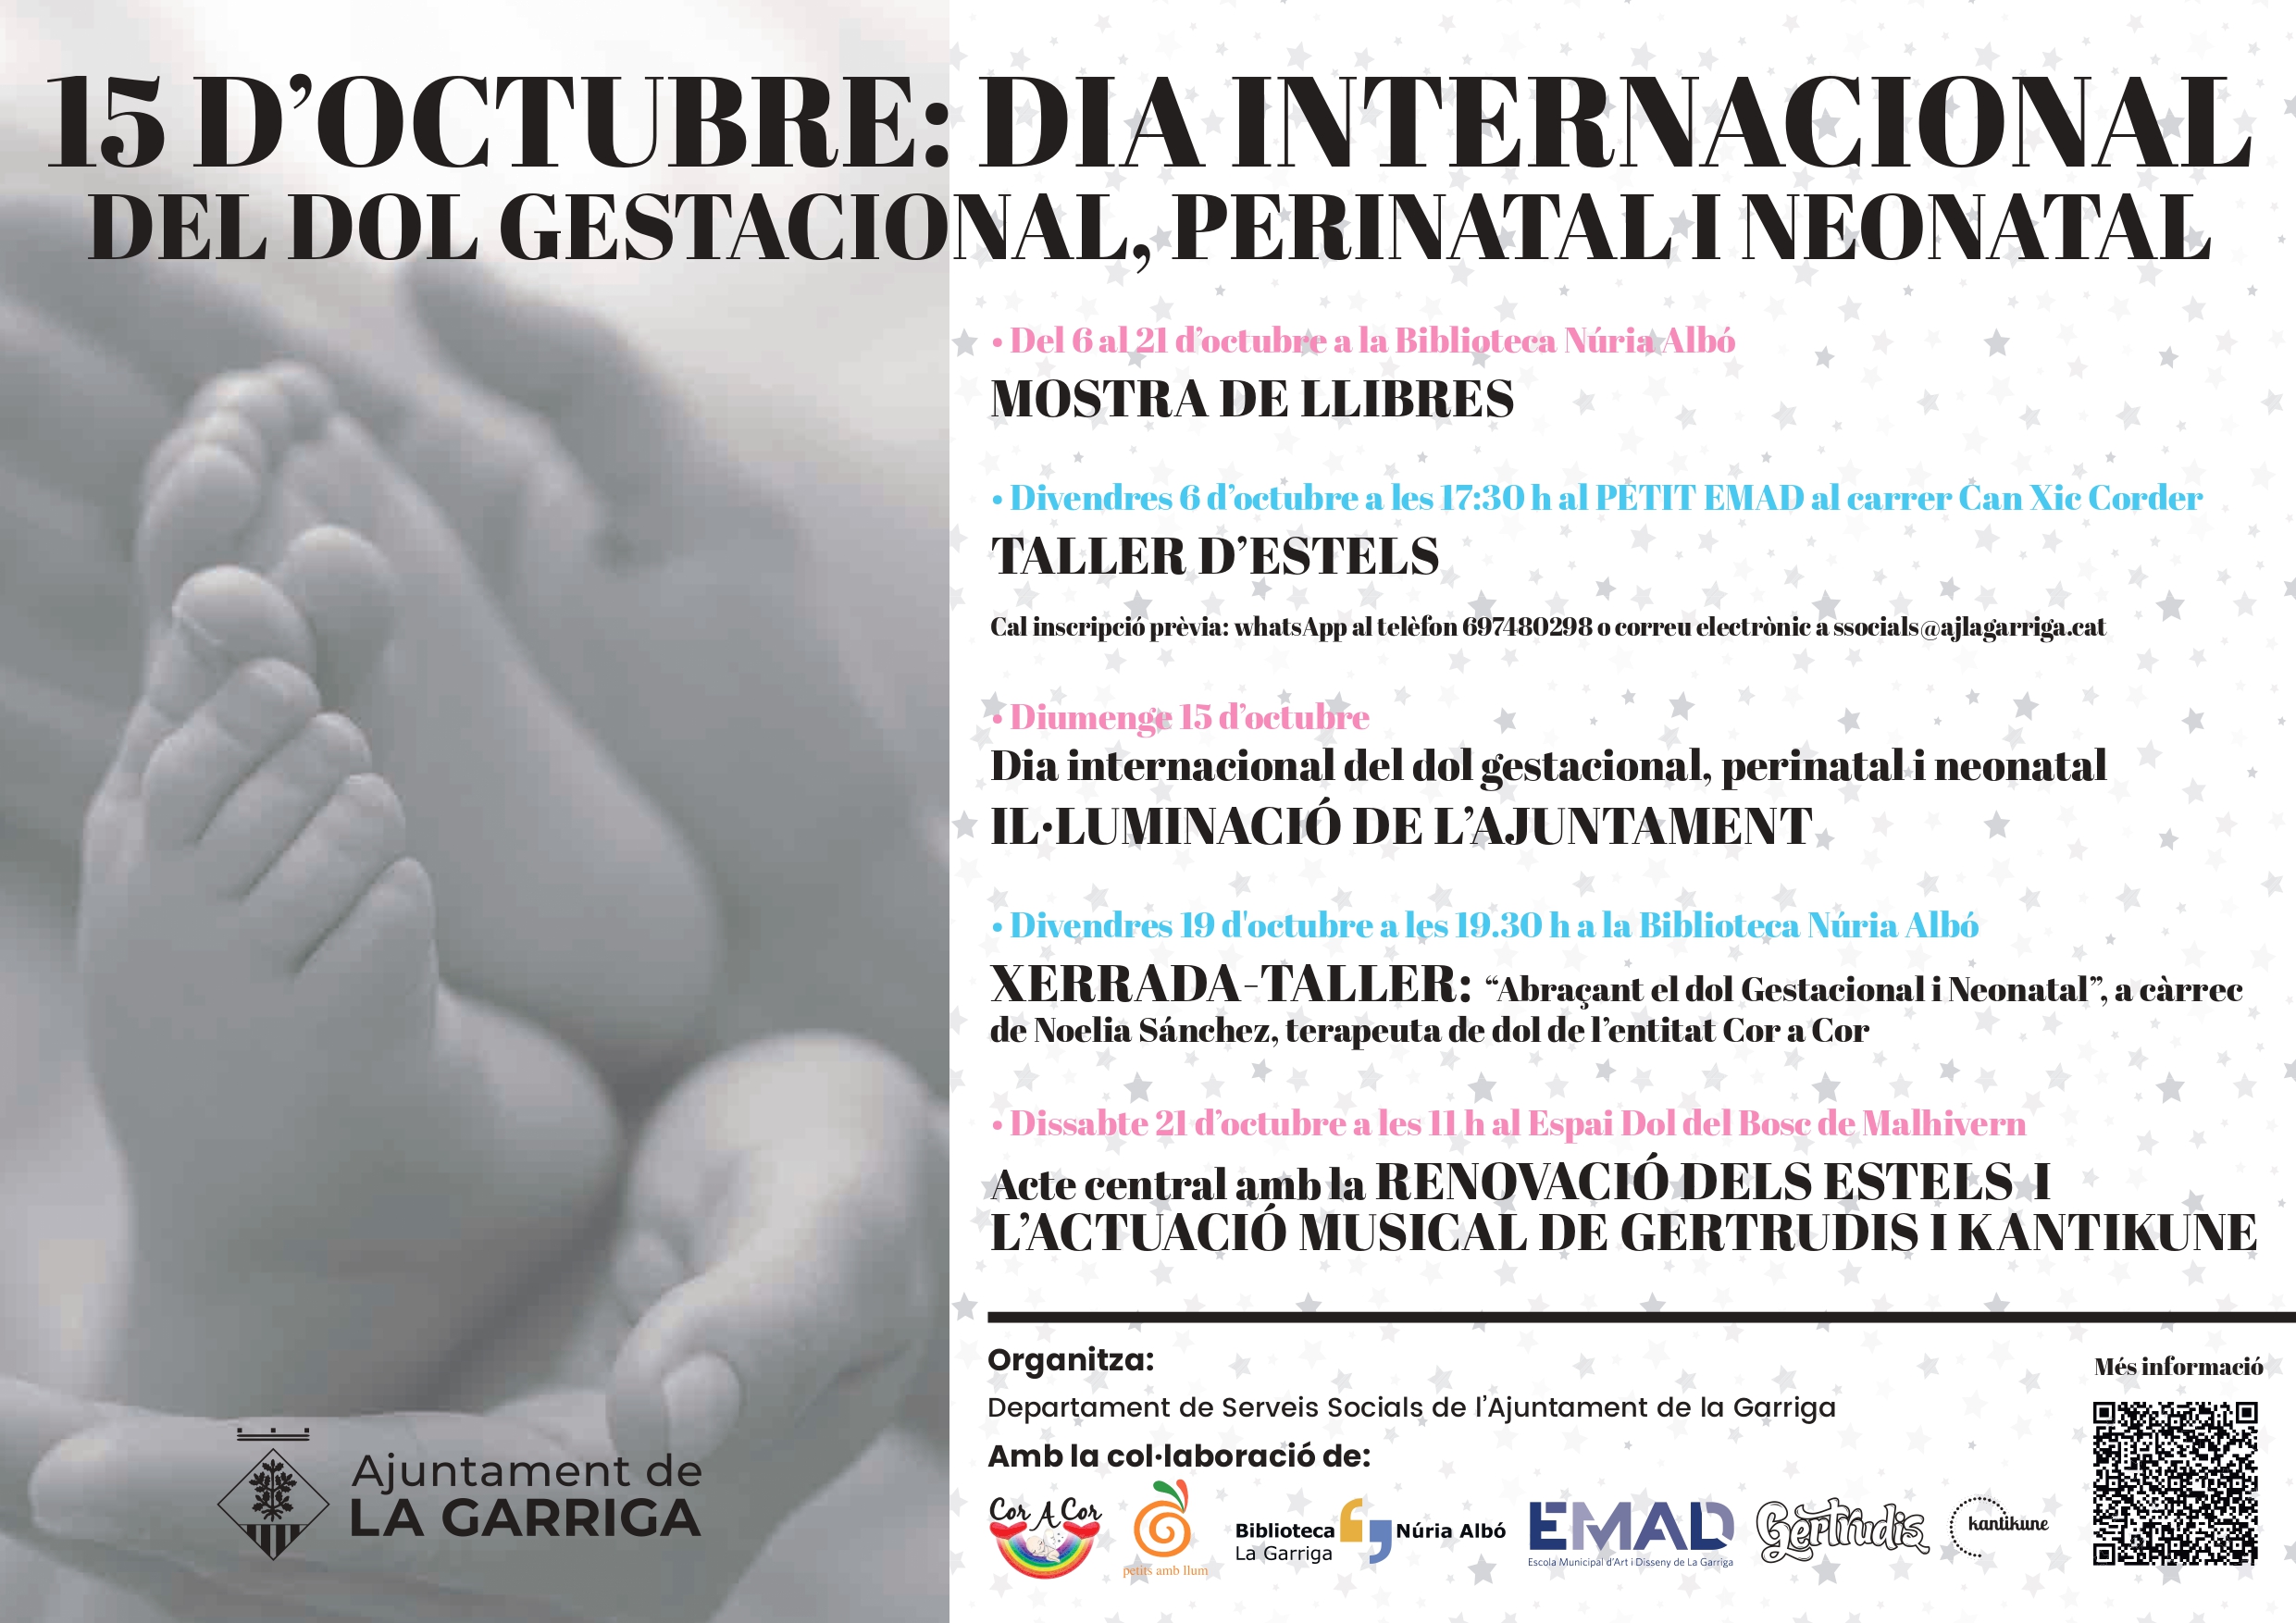 15 d'octubre: Dia Internacional del Dol Gestacional, Perinatal i Neonatal